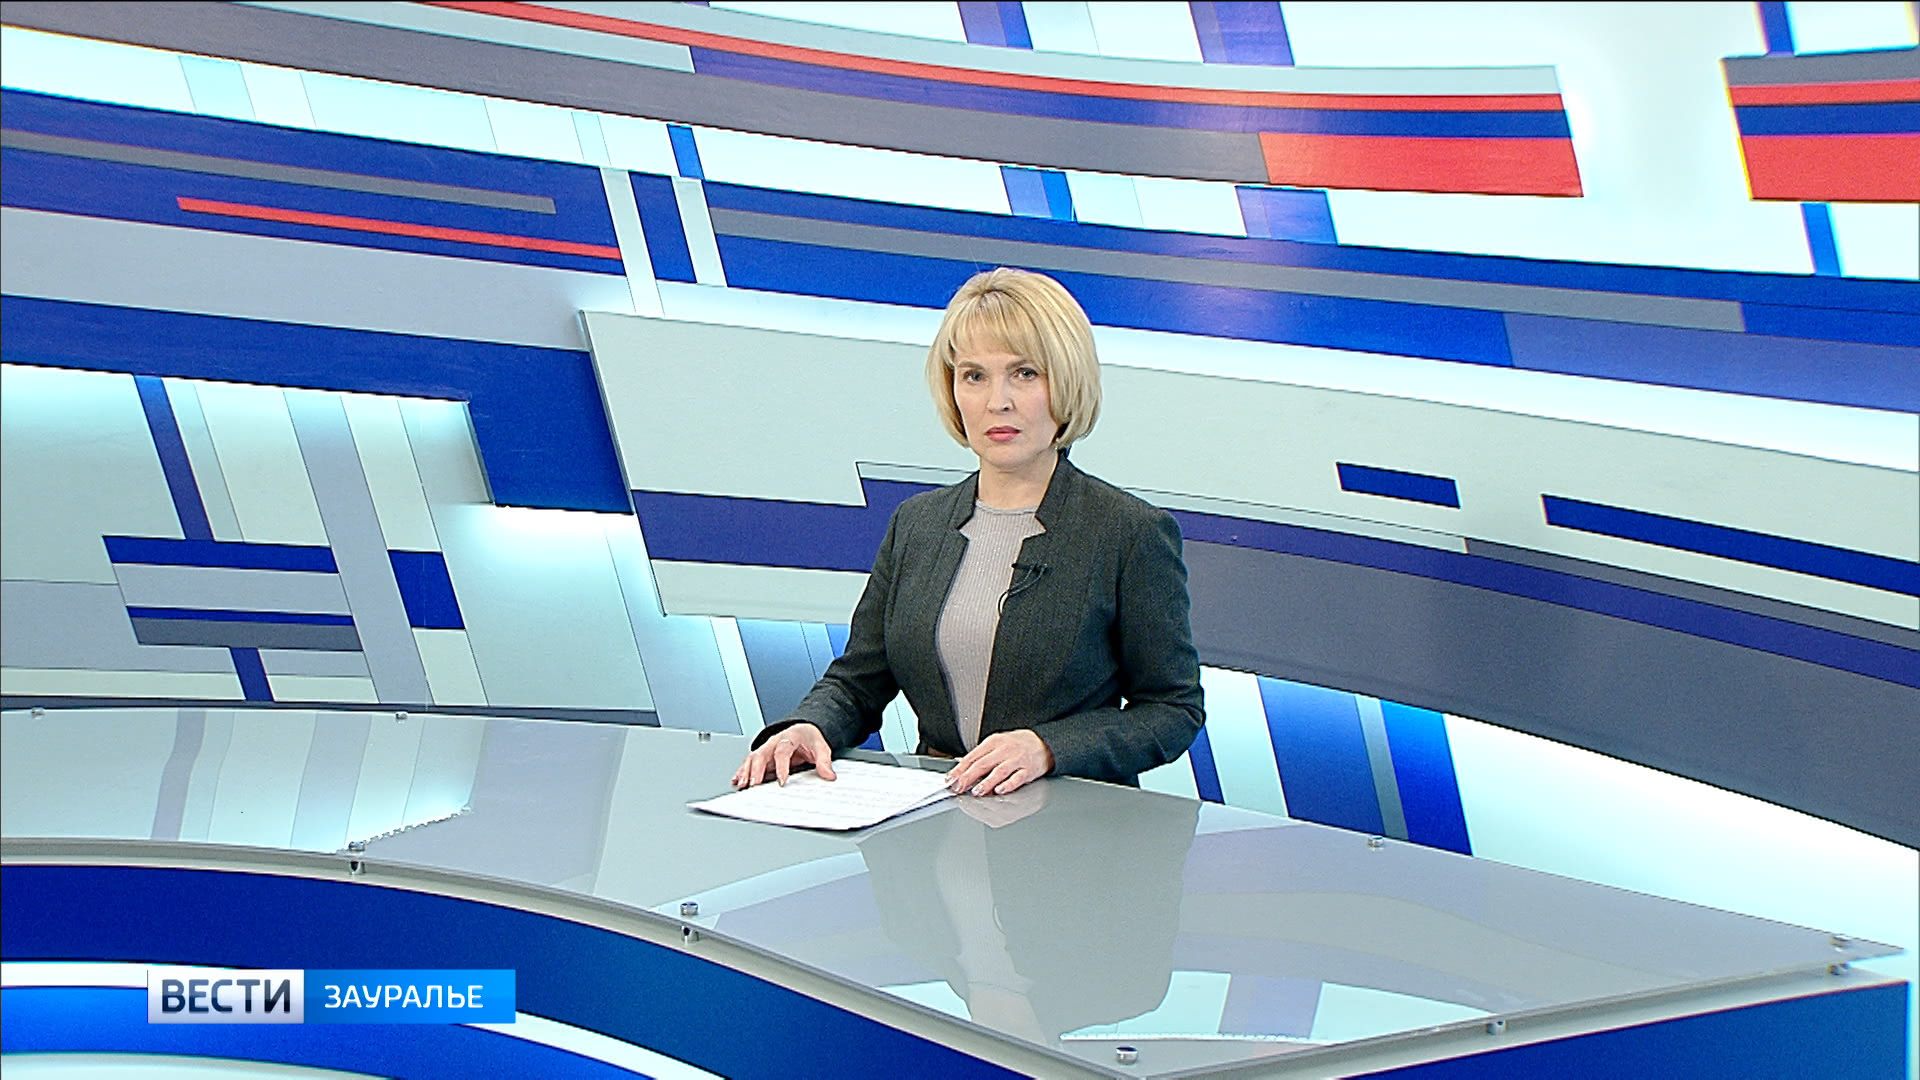 Передача на россия 1 сейчас. Теленовости. Кафедра канала Россия 1.